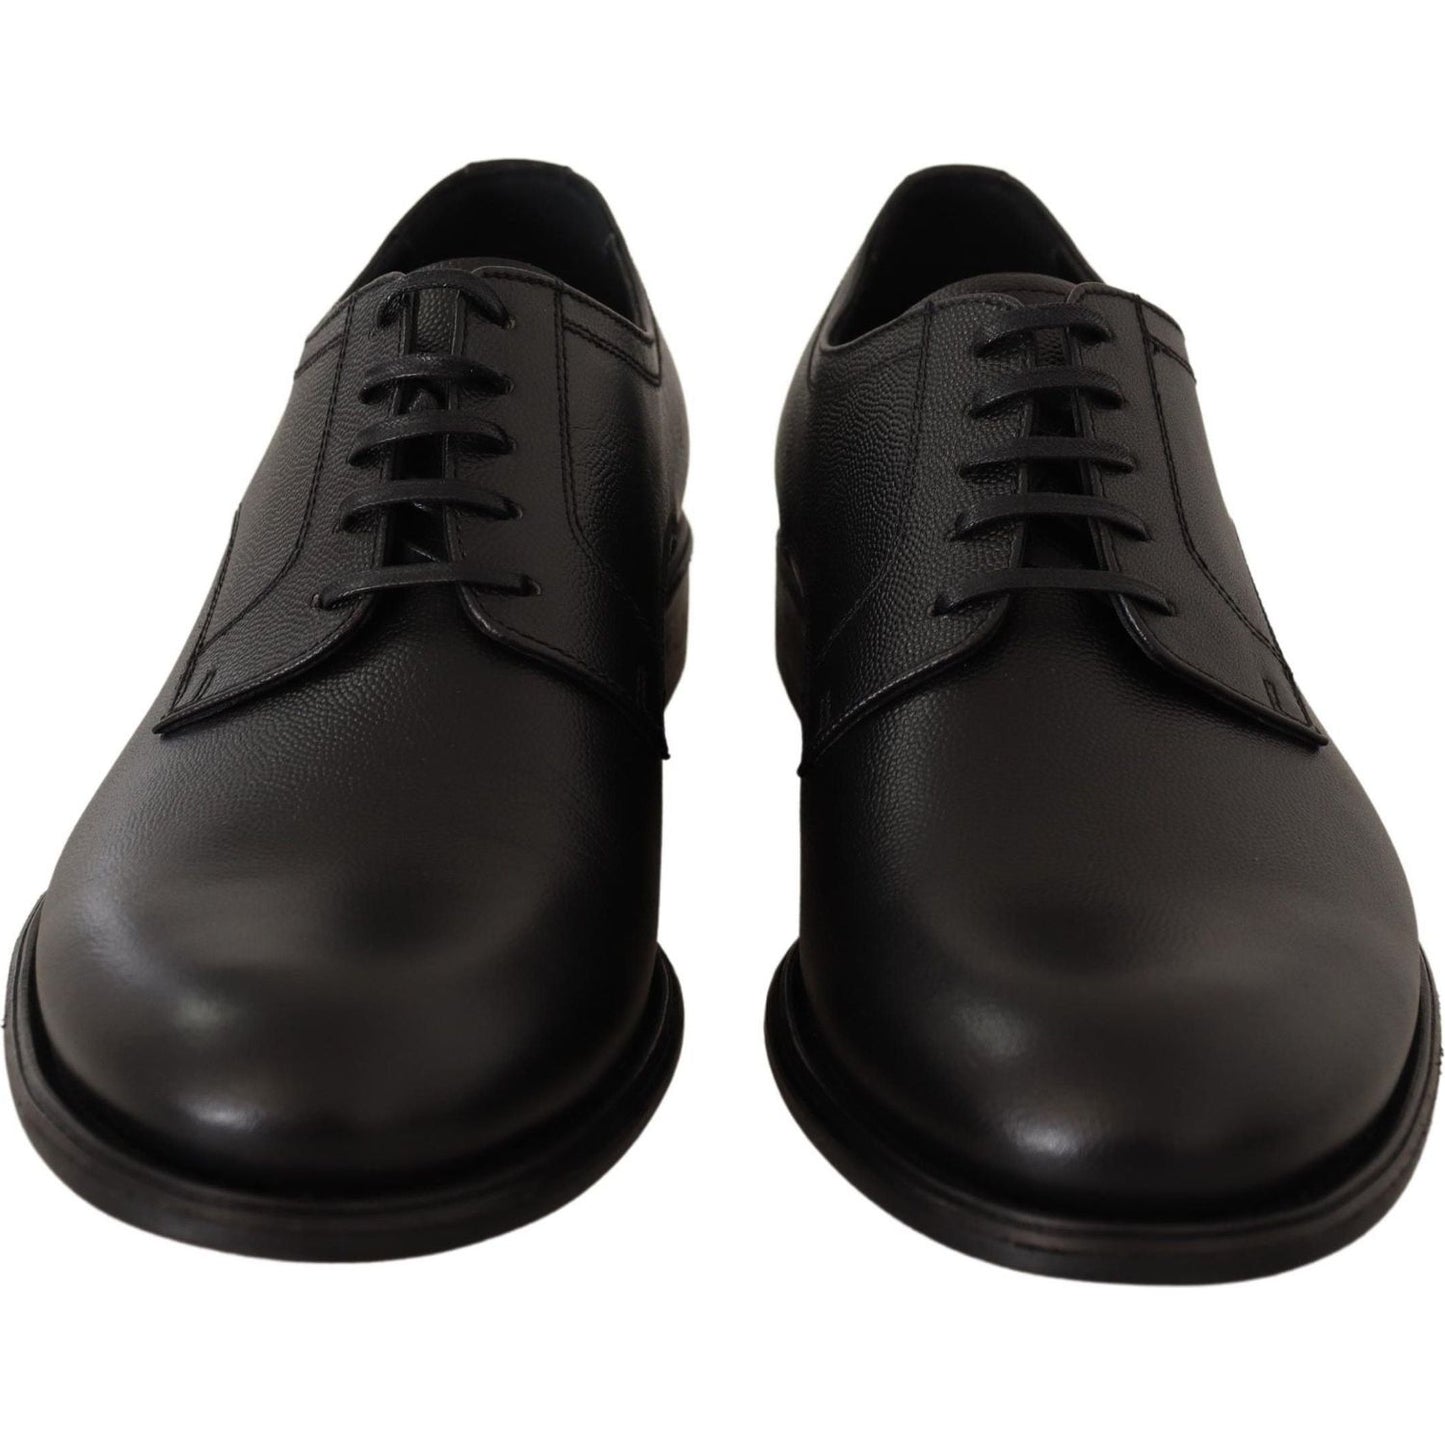 Dolce & Gabbana Elegant Black Leather Derby Shoes black-leather-lace-up-mens-formal-derby-shoes-1 IMG_4968-f52b43b4-c2a.jpg